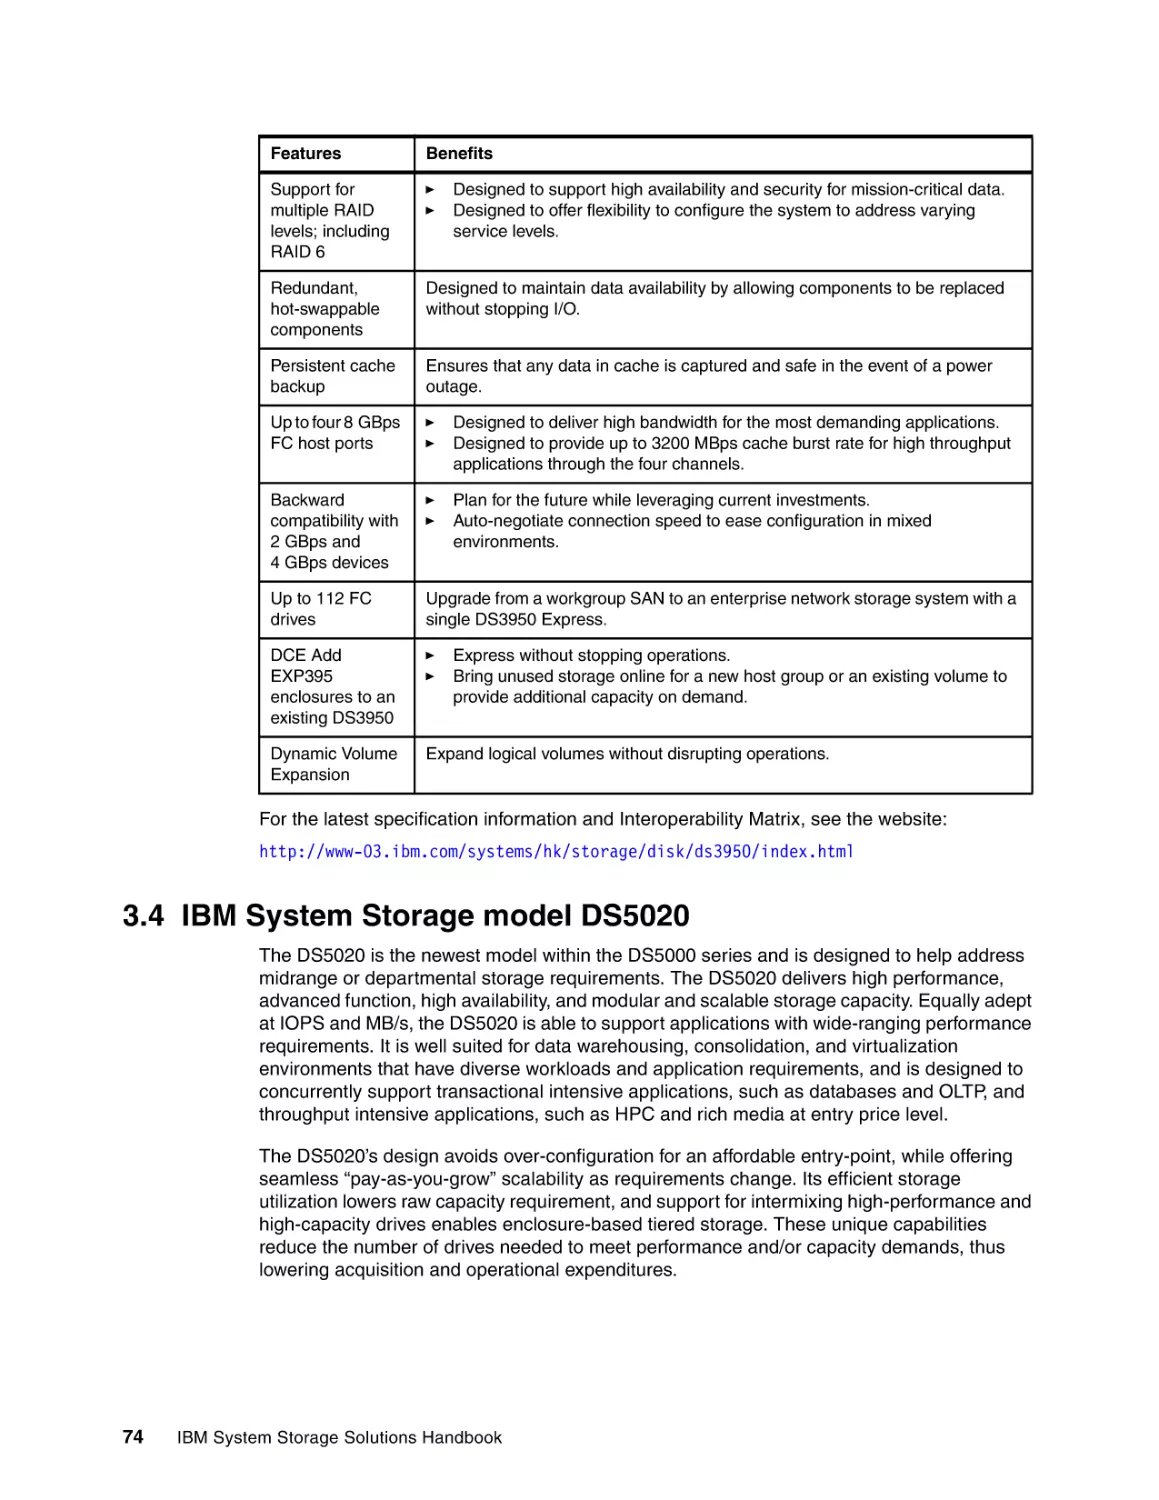 3.4 IBM System Storage model DS5020